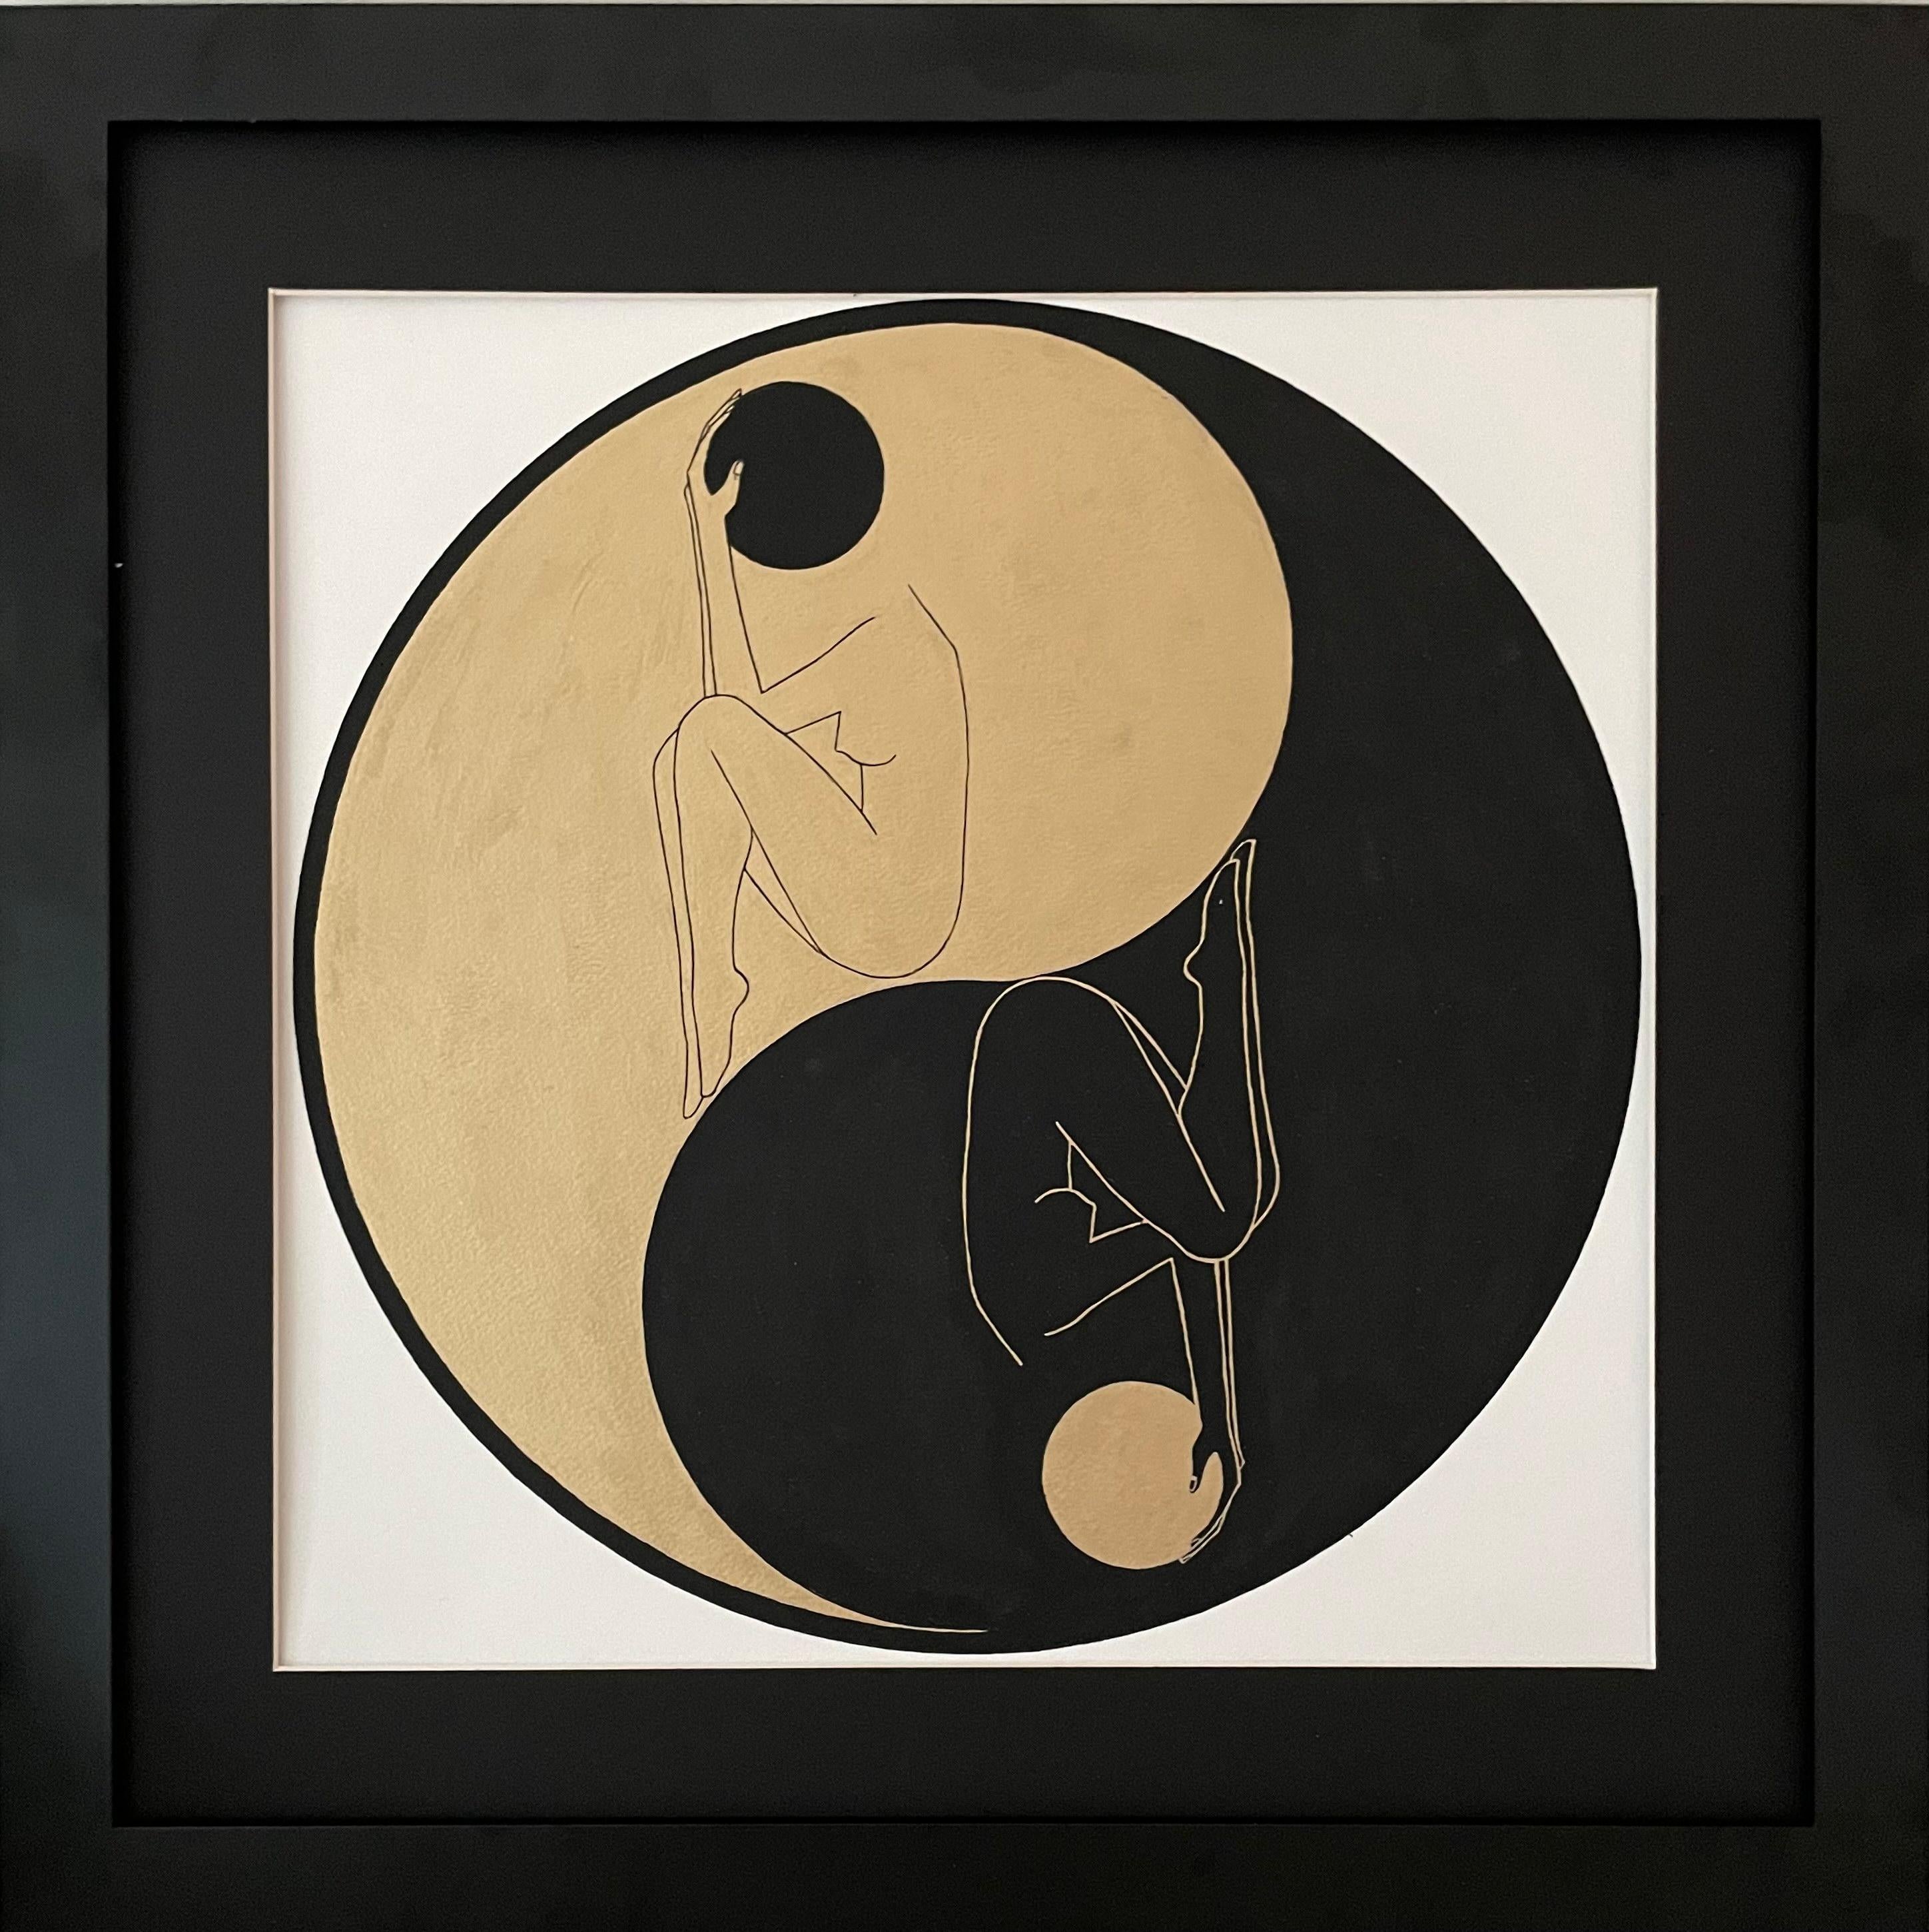 Yin und Yang - Linienzeichnungsfigur in einem Kreis mit goldener und schwarzer Scheibe